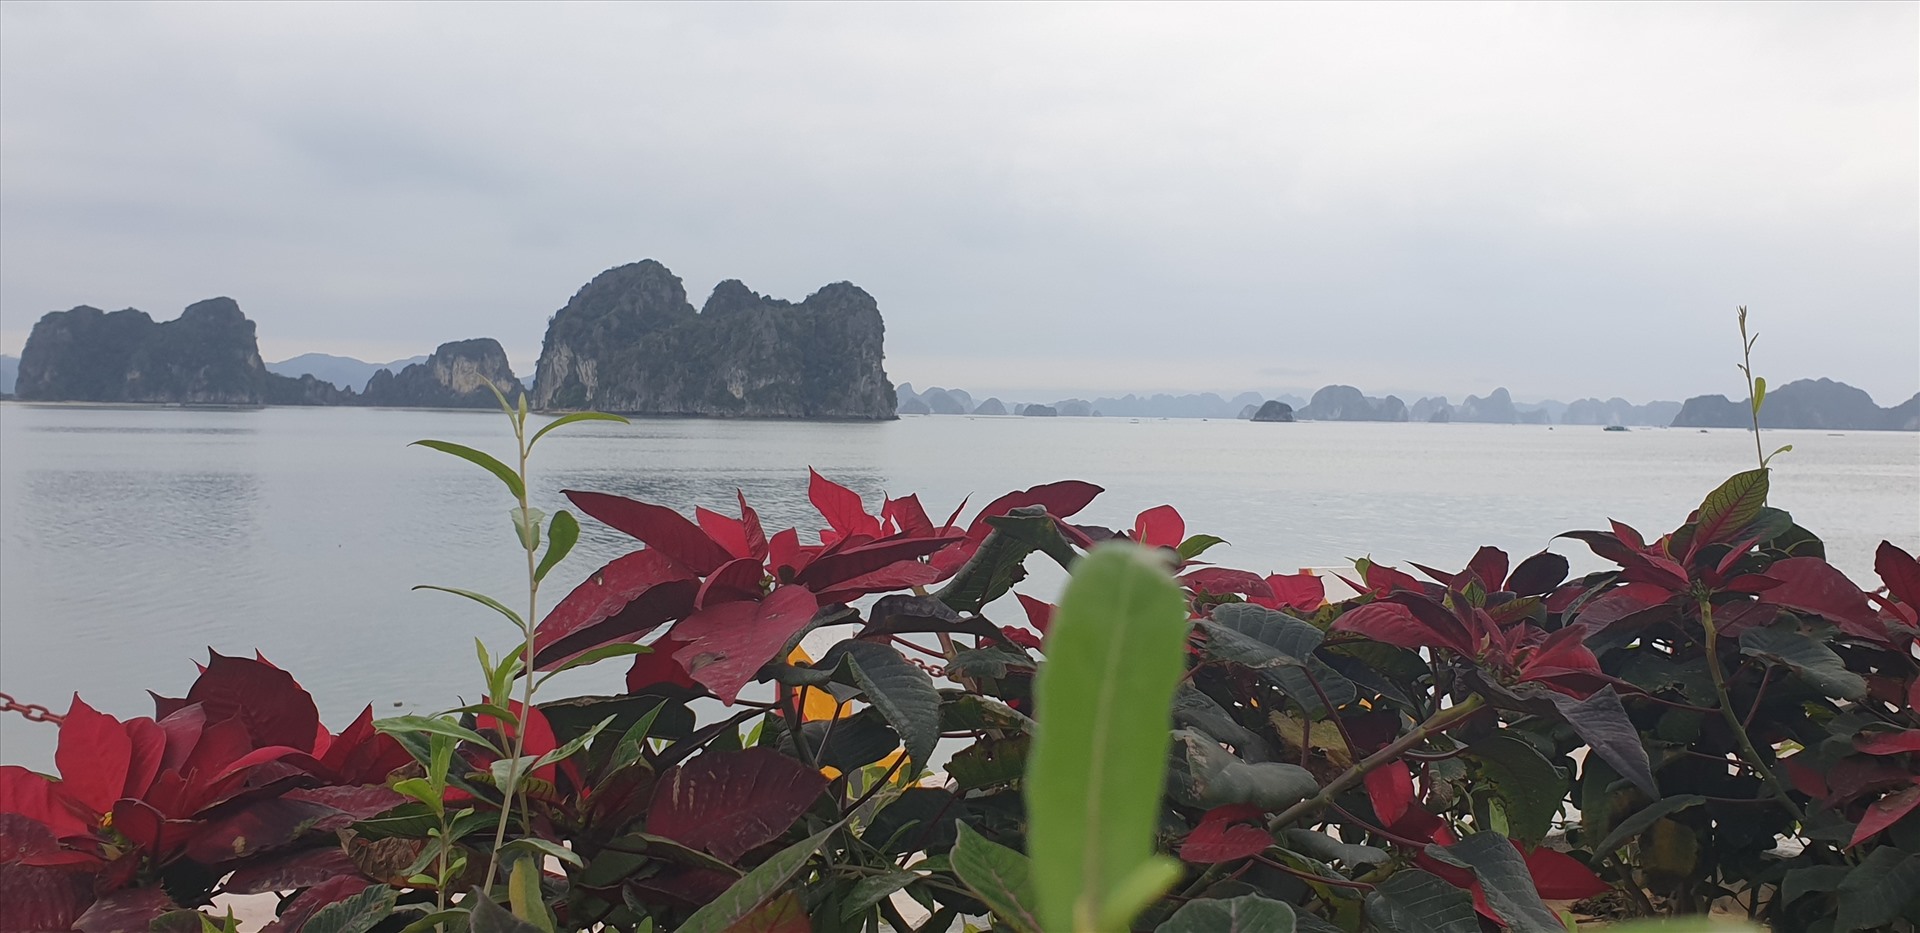 Với vịnh Bái Tử Long (ảnh) đẹp không kém vịnh Hạ Long, Vân Đồn được kỳ vọng sẽ trở thành một trung tâm du lịch sinh thái biển đẳng cấp thế giới. Ảnh: Nguyễn Hùng